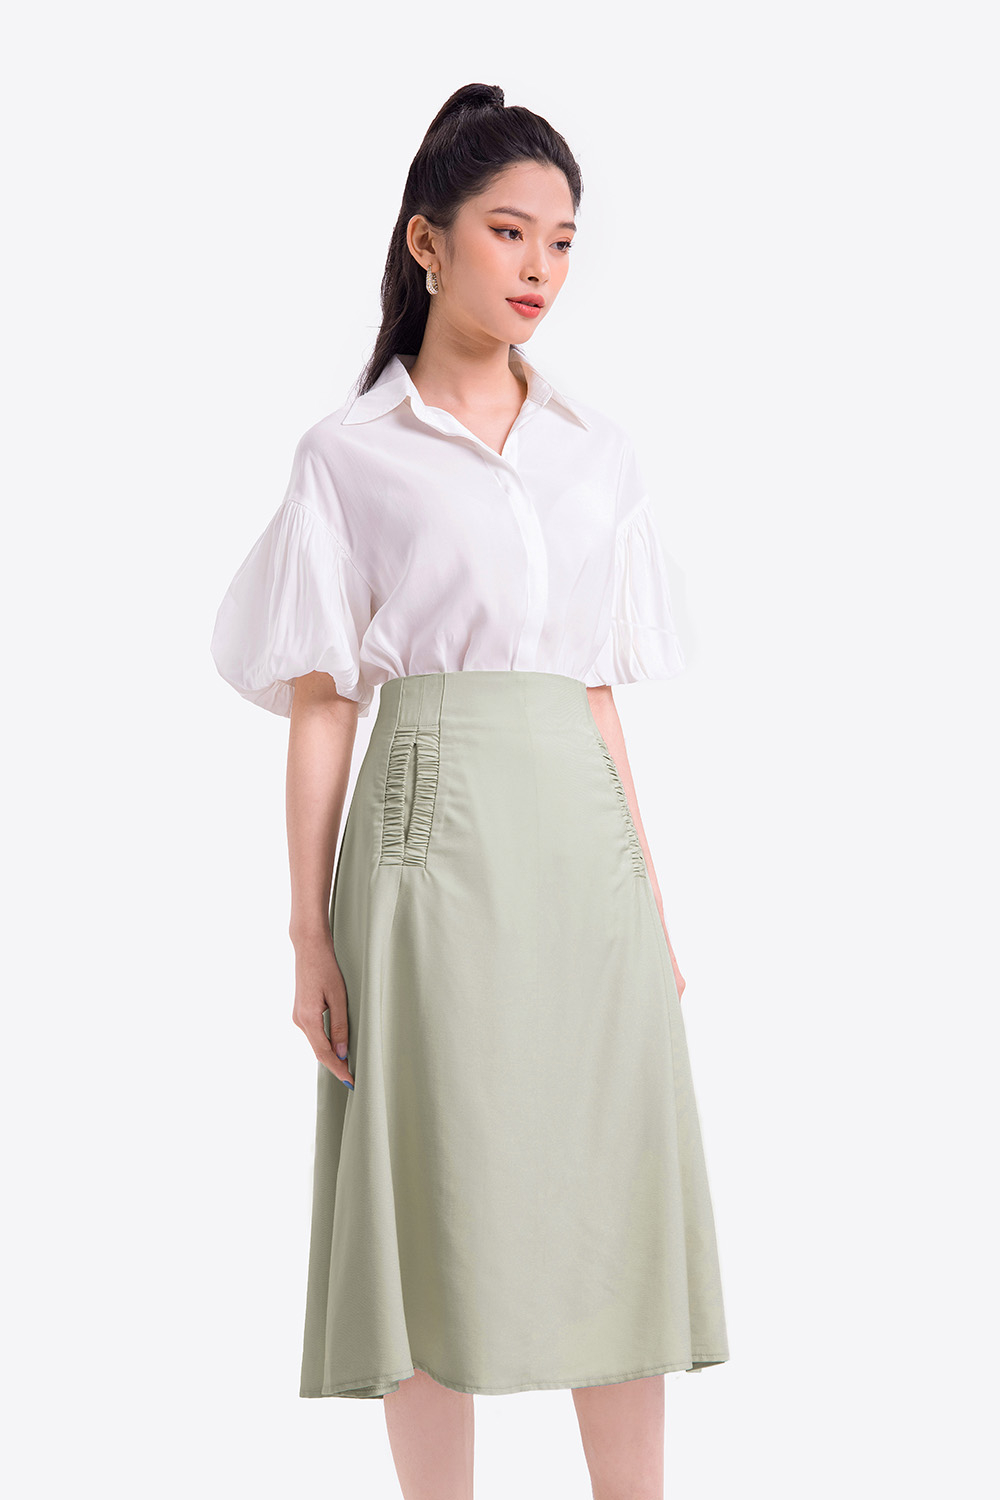 Chân váy chữ A dáng dài 70cm sẻ sau đủ màu  Shopee Việt Nam